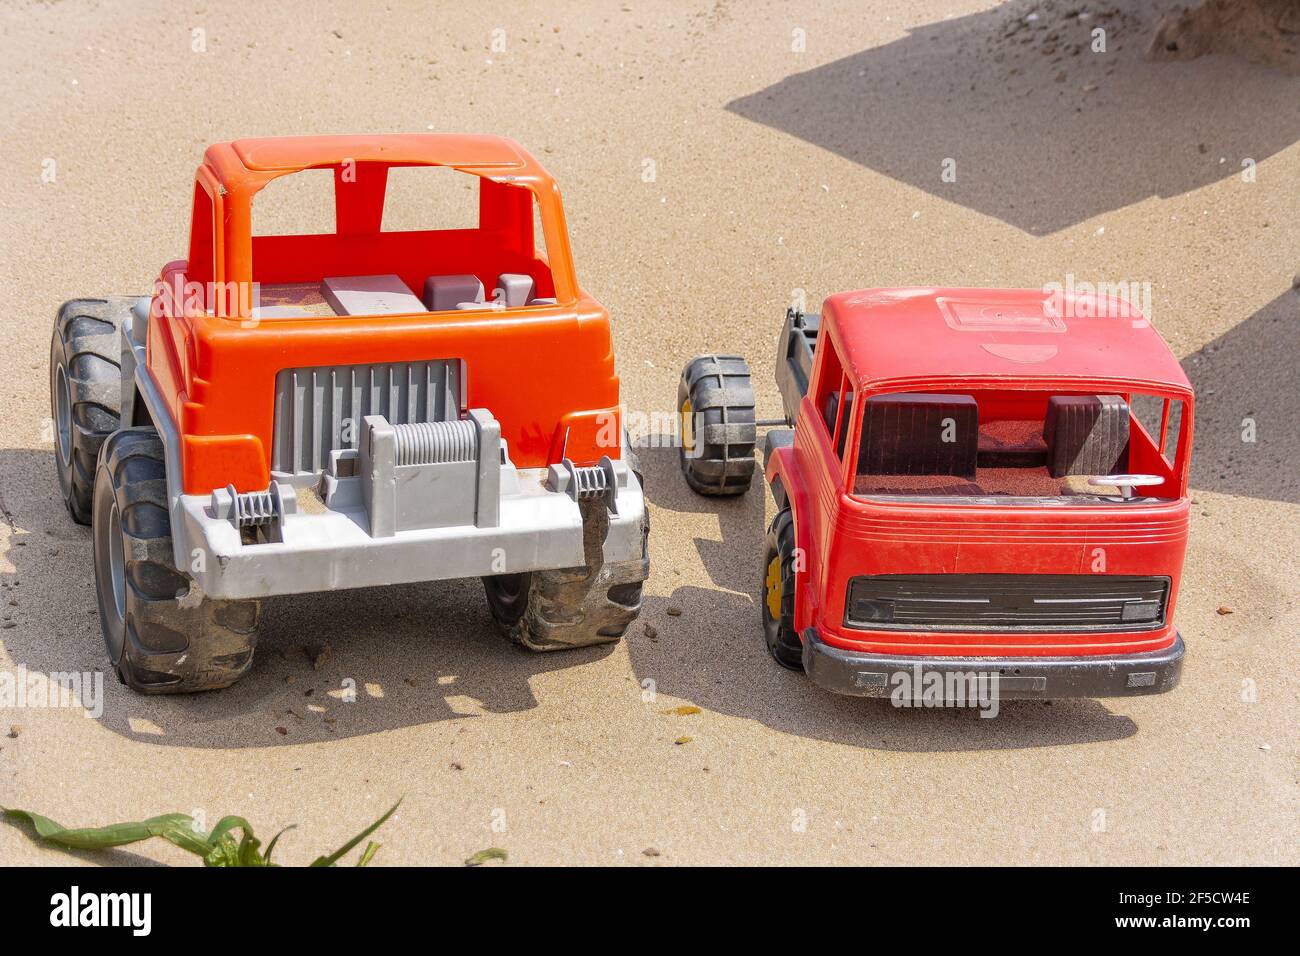 Due bambini`s automobili giocattolo, pre-possedute, rotto stand sulla sabbia sotto il luminoso sole estivo Foto Stock